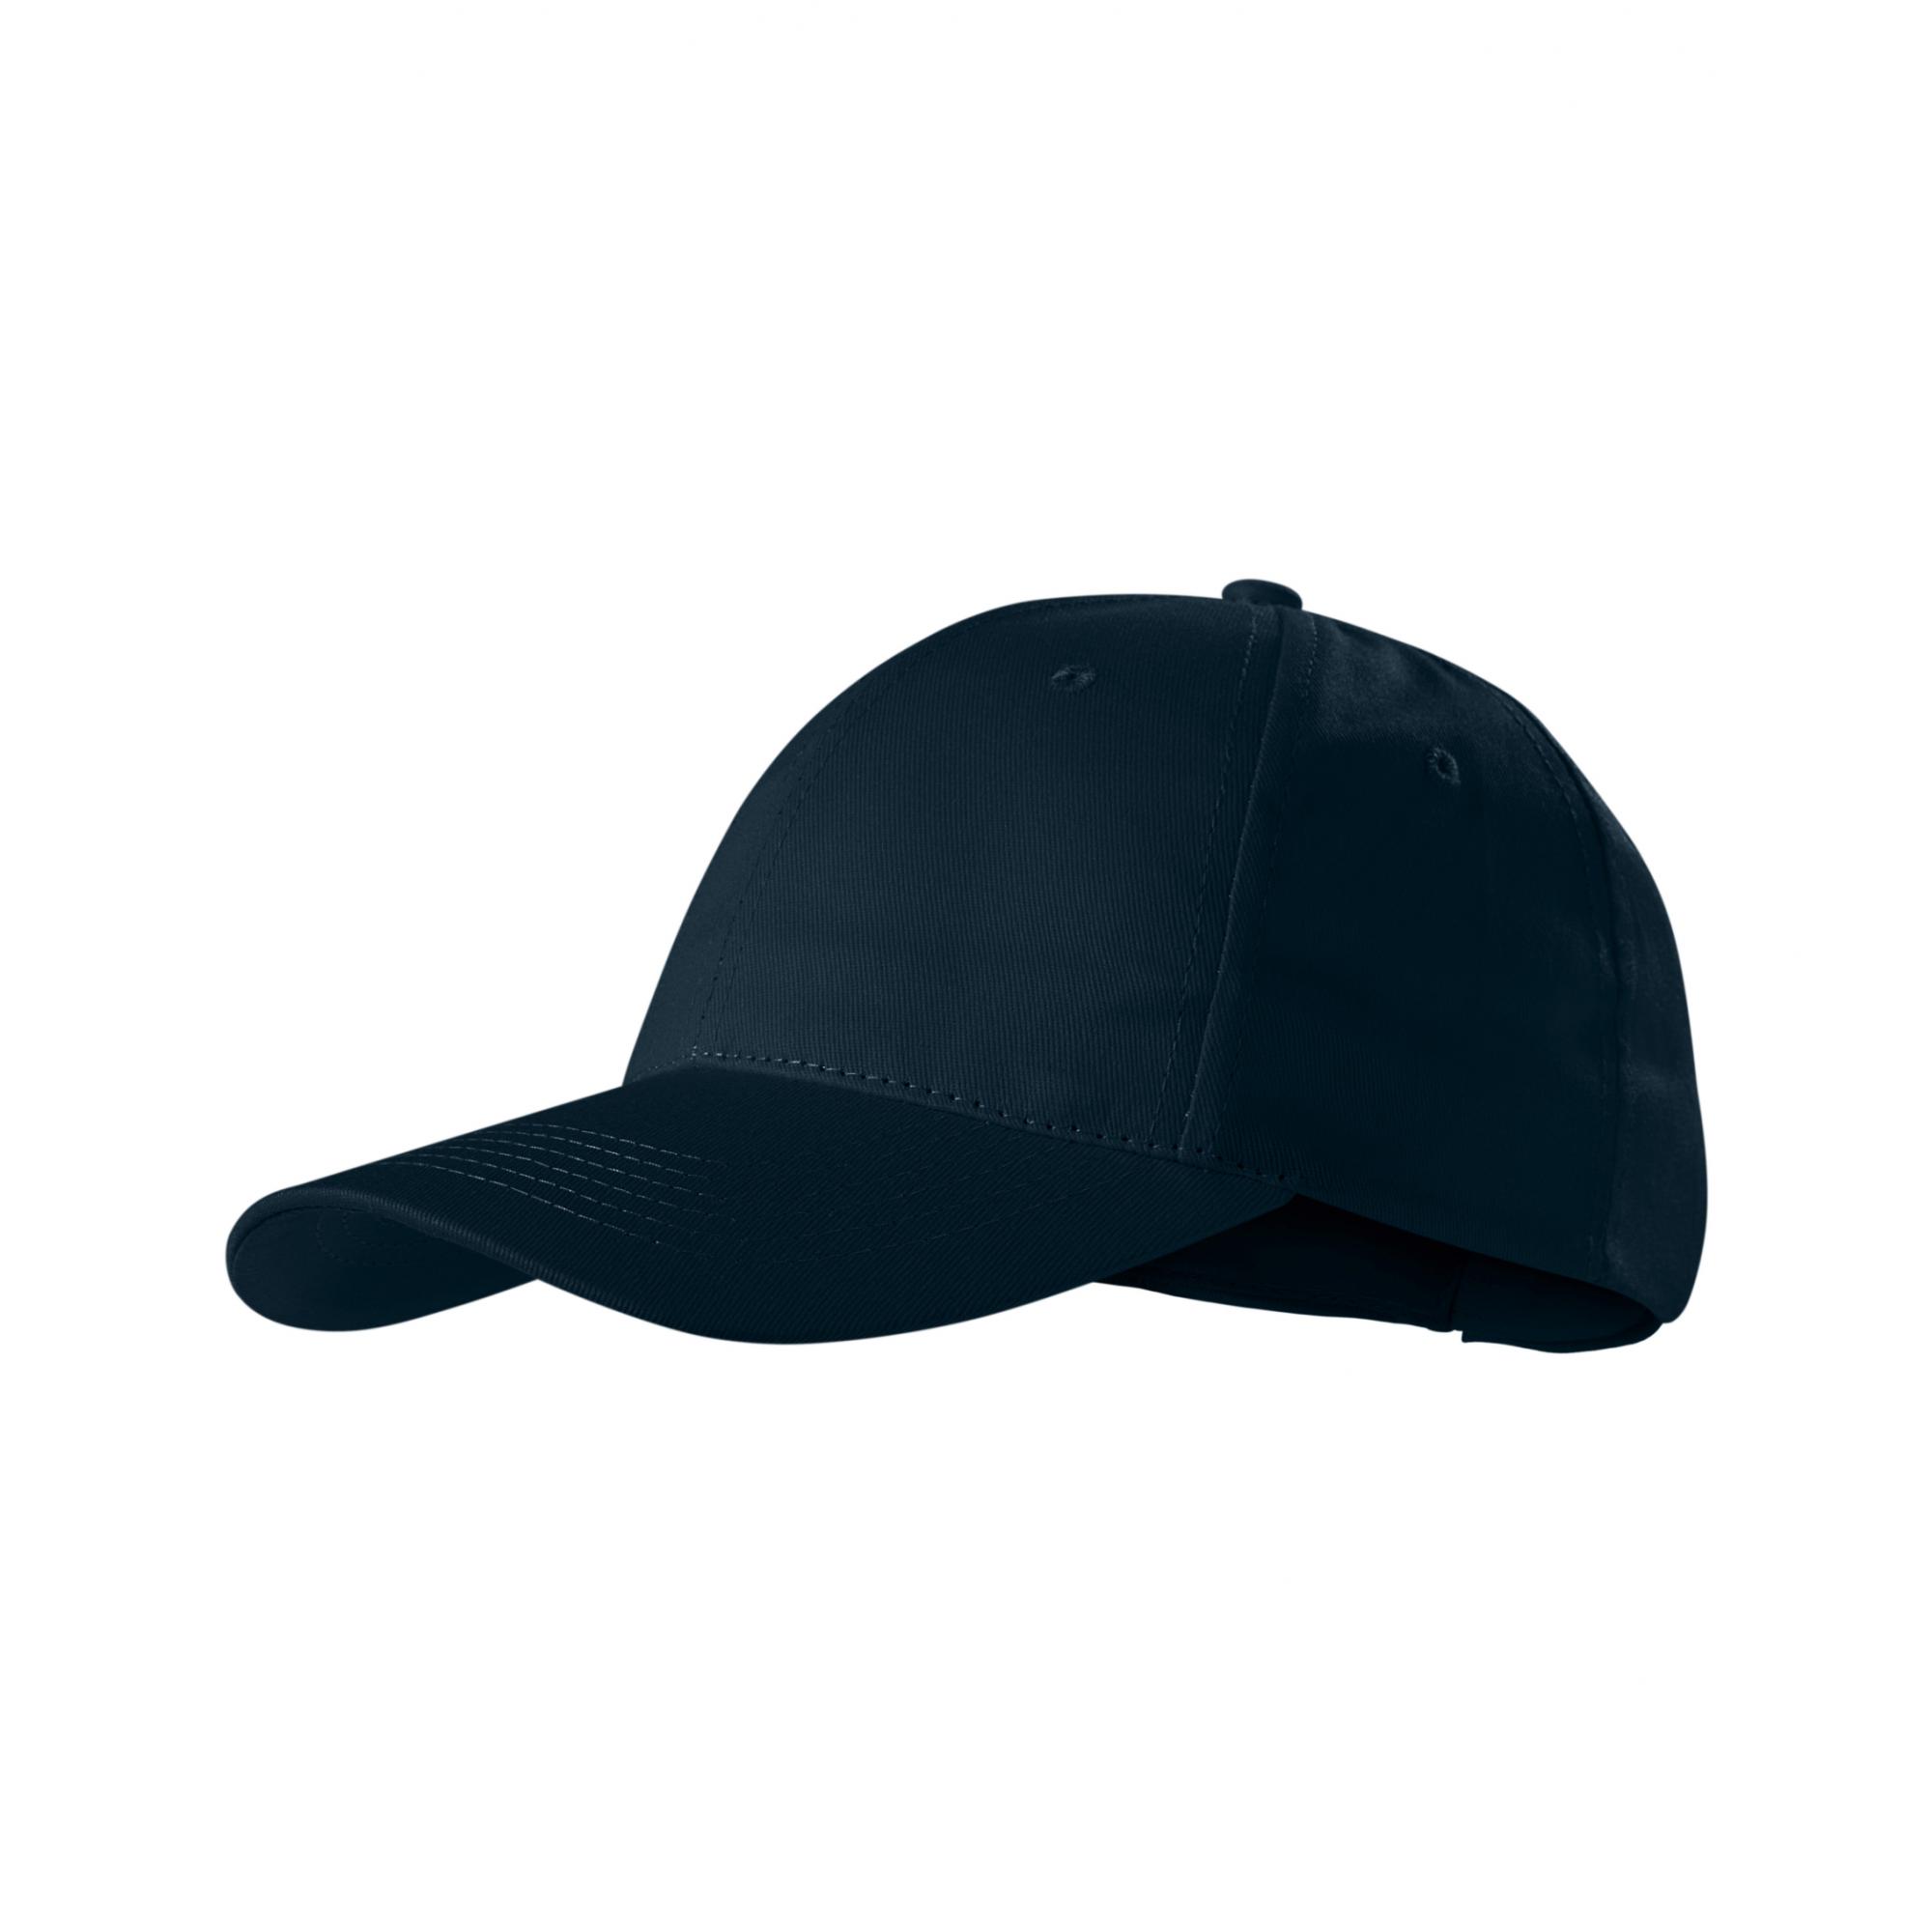 Şapcă unisex Sunshine P31 Albastru marin Marime universala